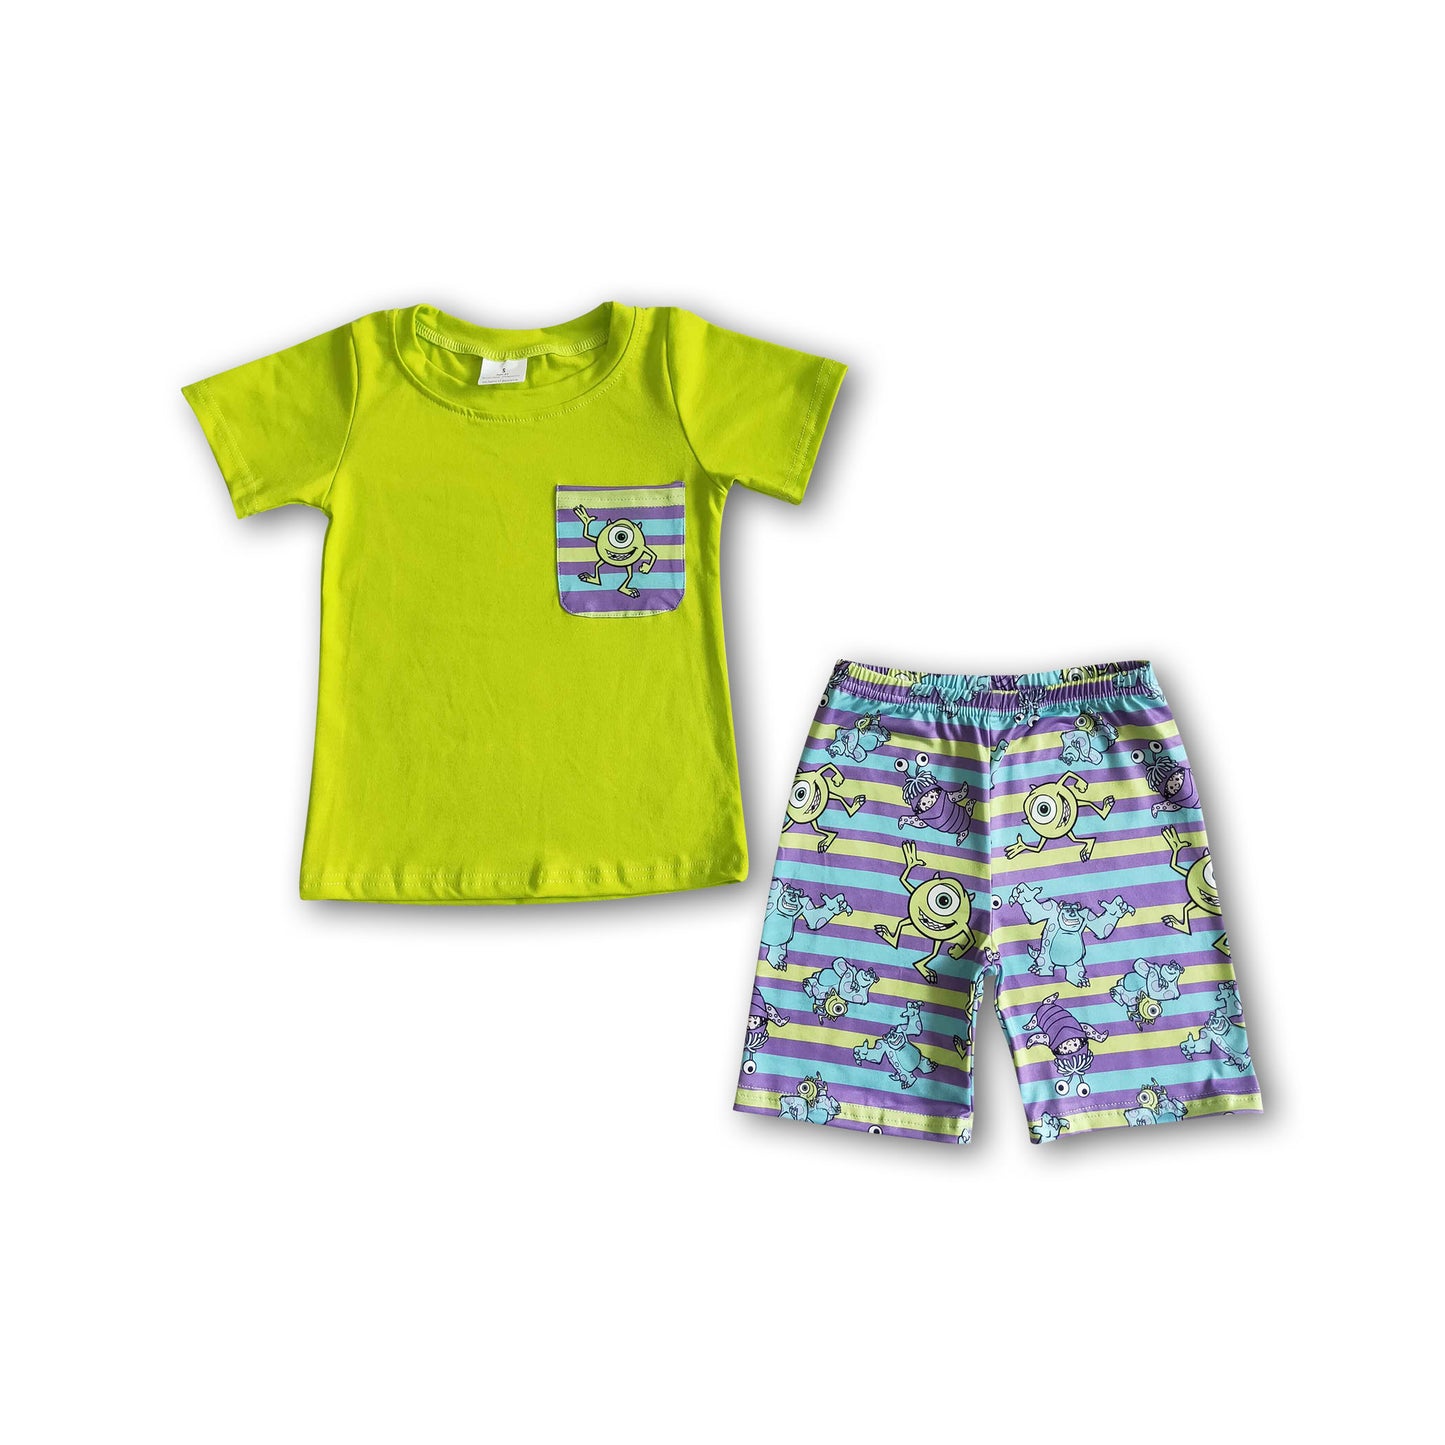 Pocket shirt shorts baby boy summer outfits – Yawoo Garments